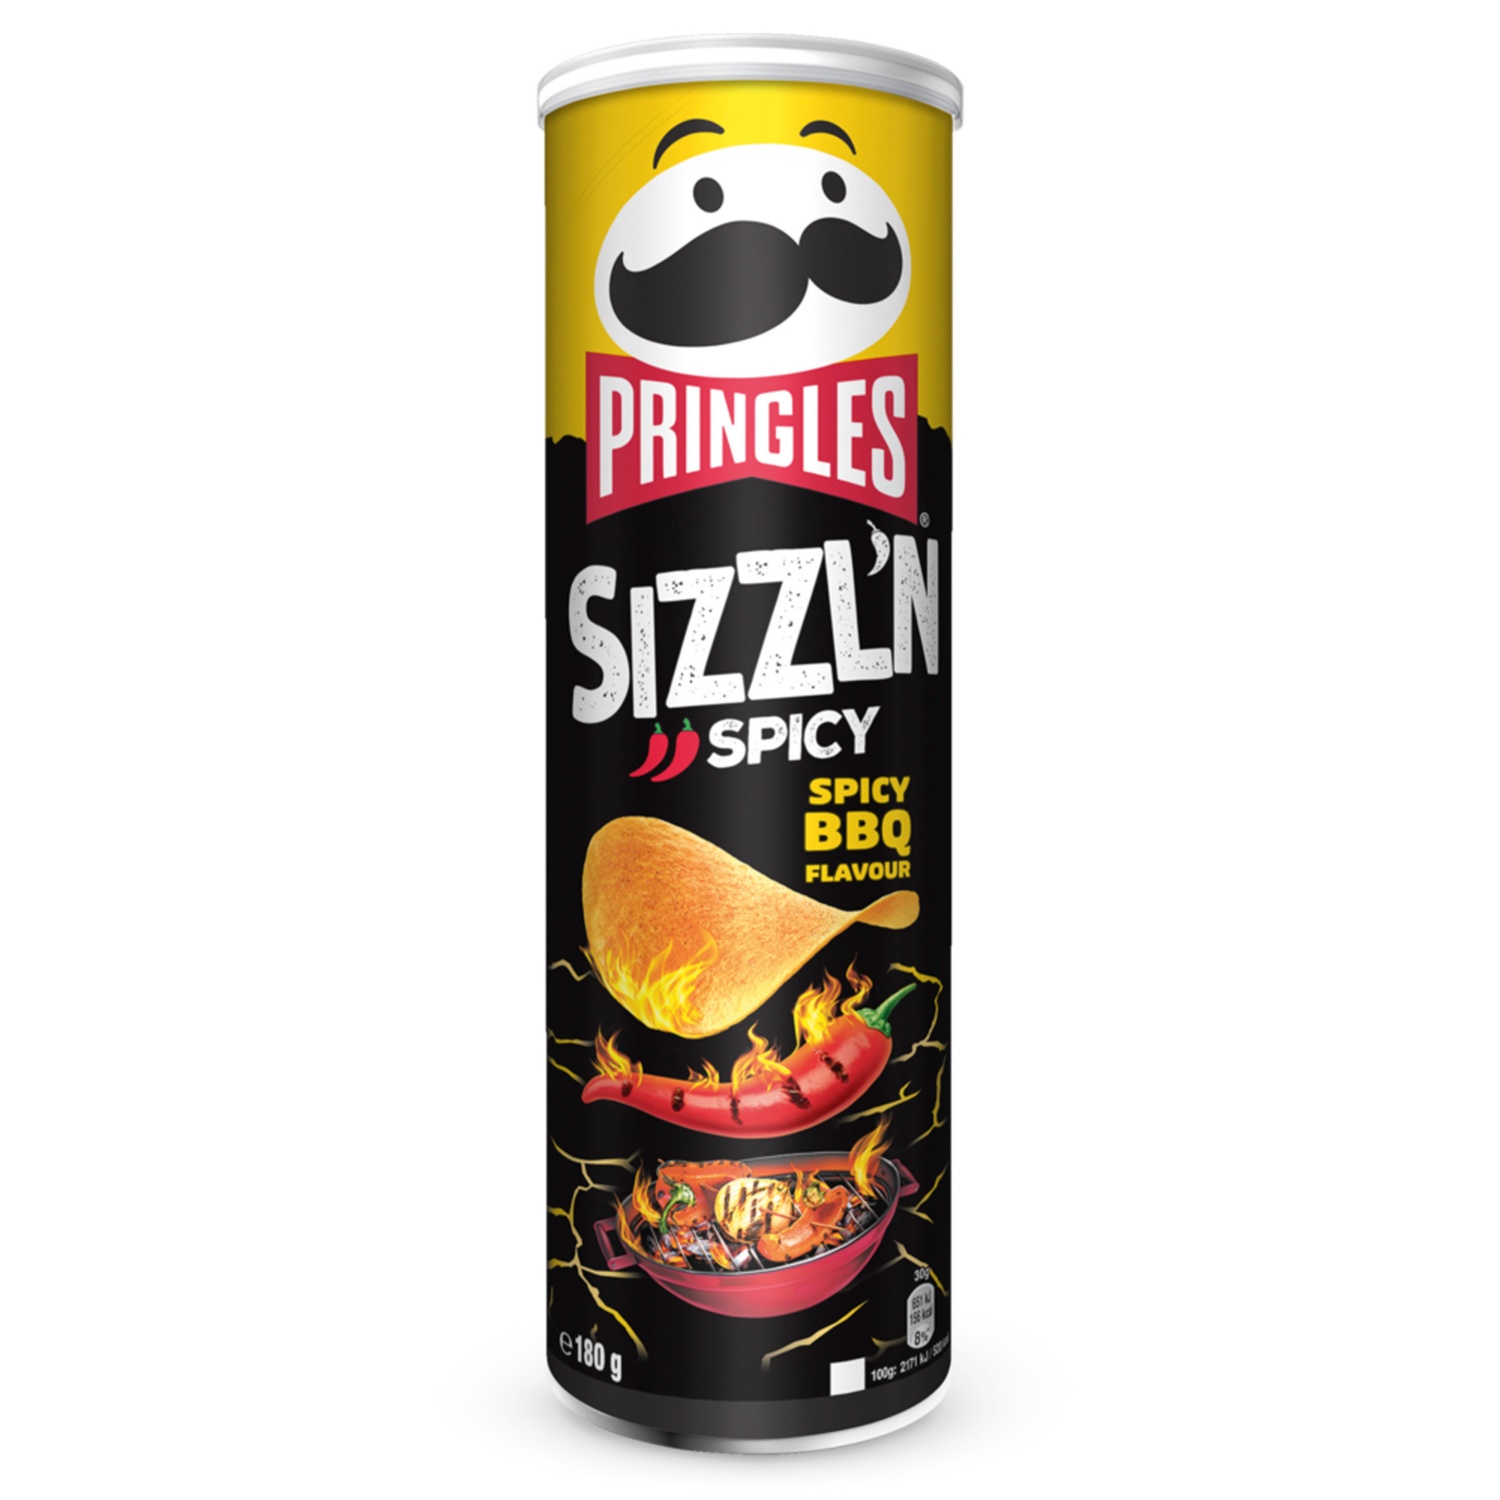 Pringles, Spicy BBQ